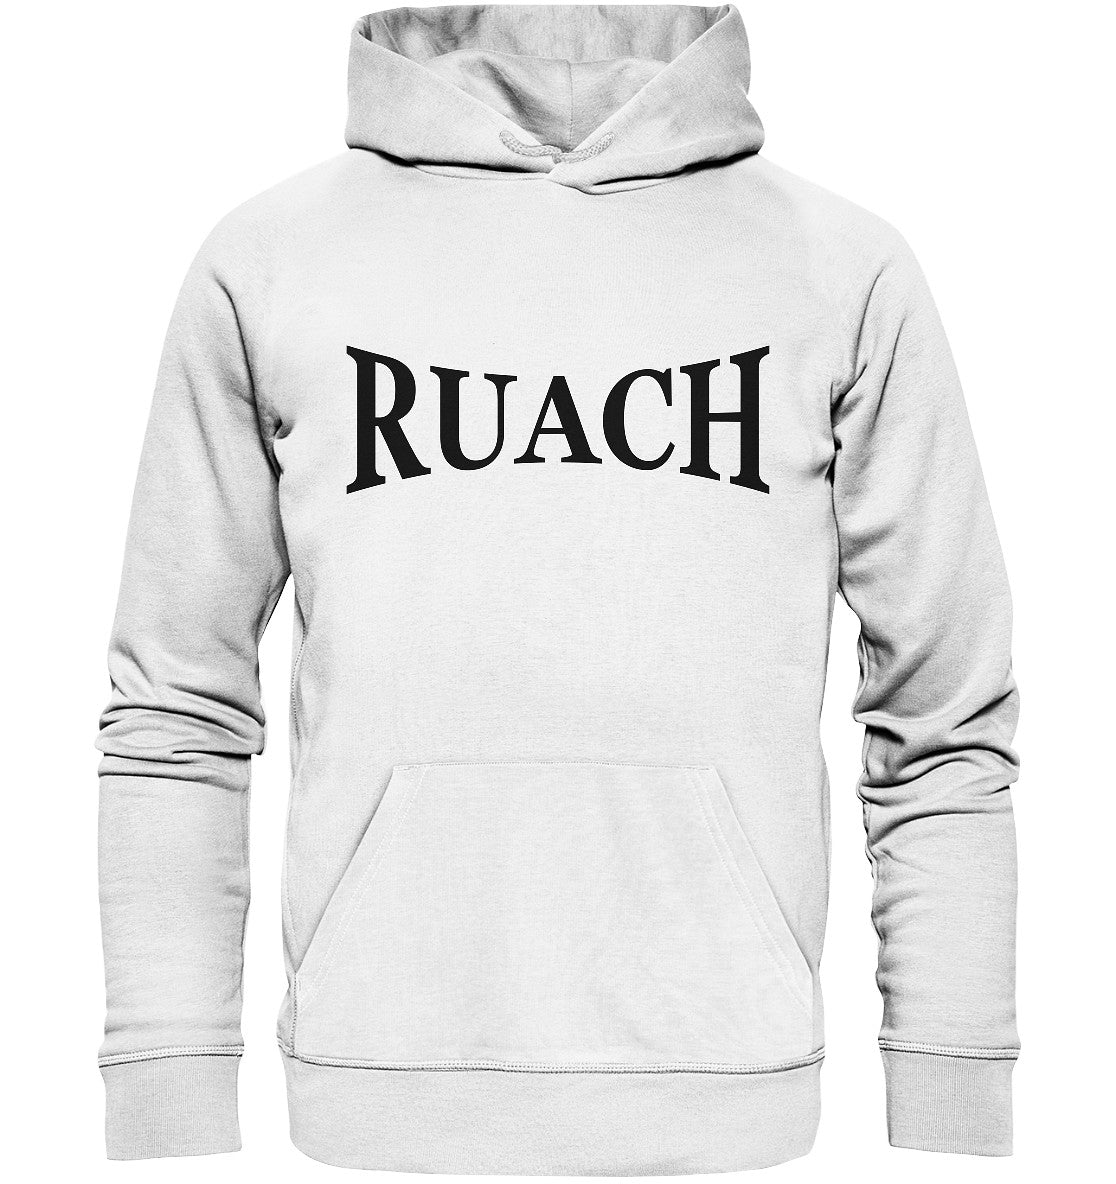 Ruach - Organic Hoodie